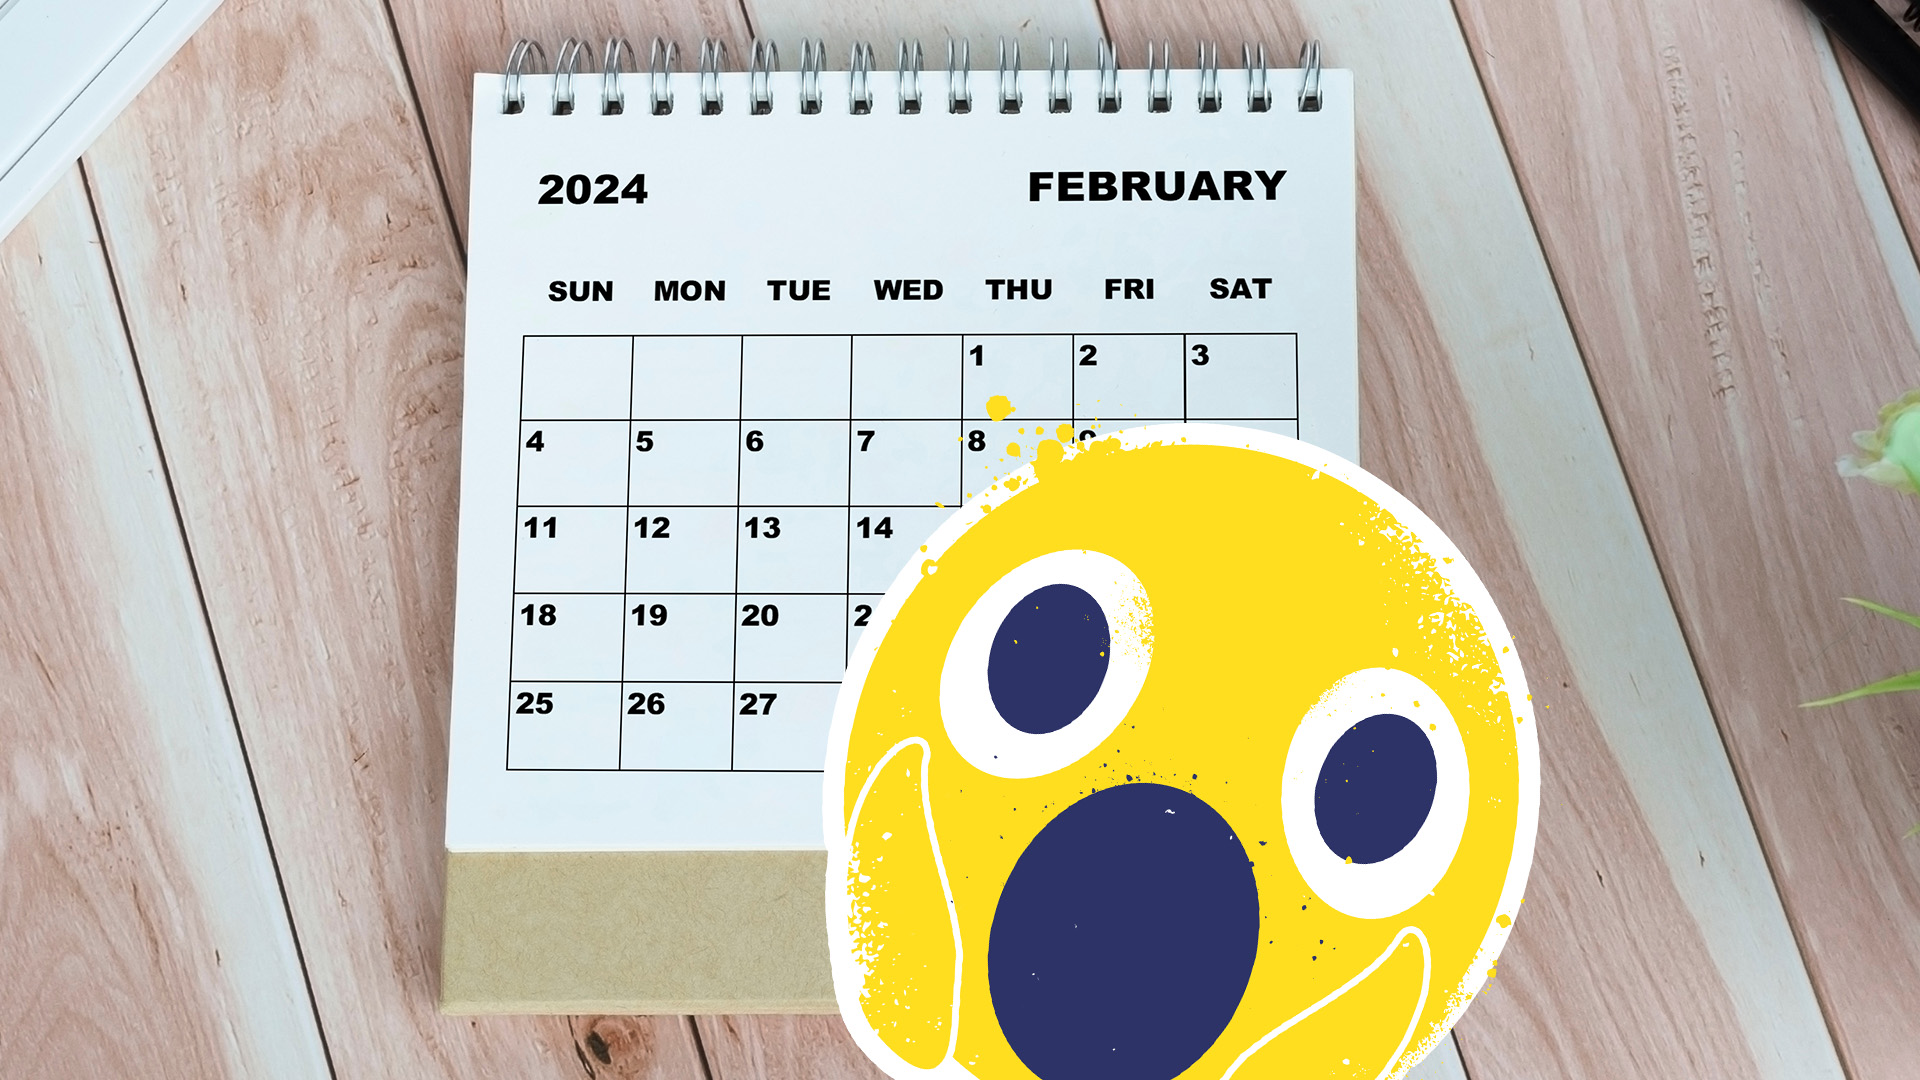 February in the calendar